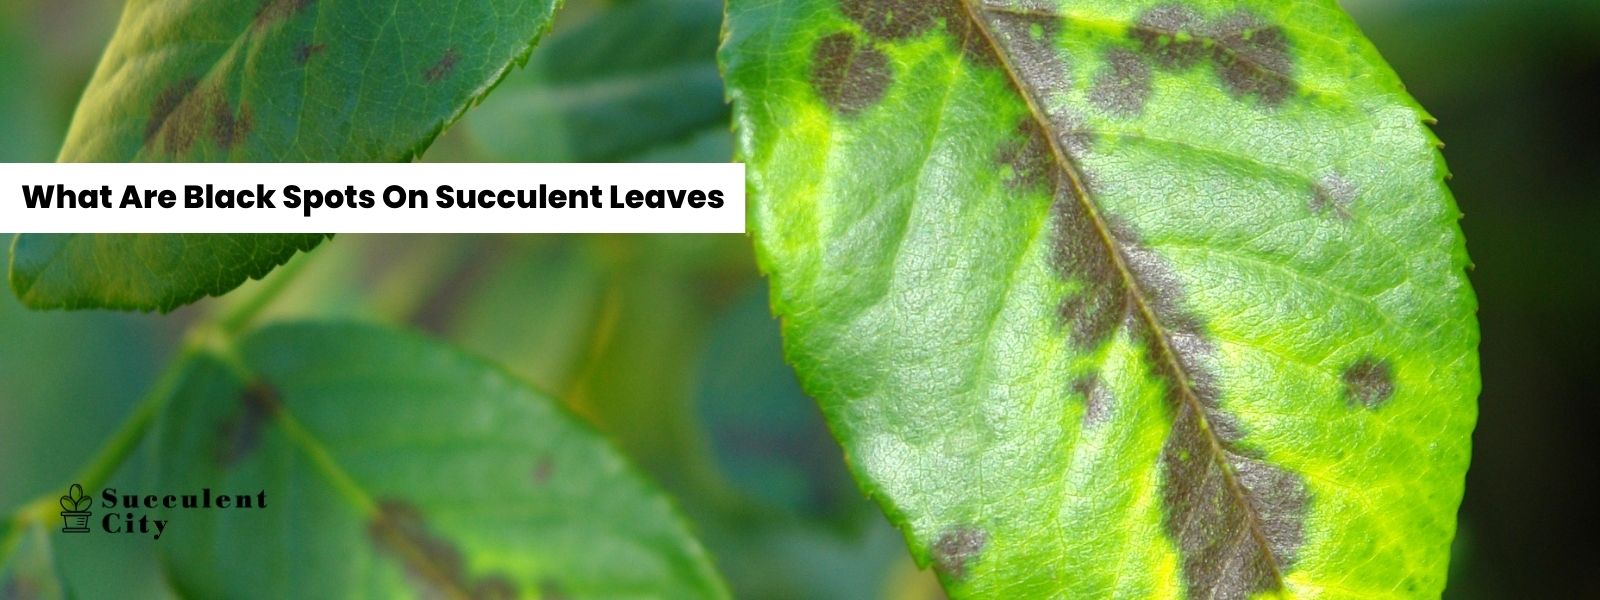 ¿Qué son las manchas negras en las hojas de las suculentas?